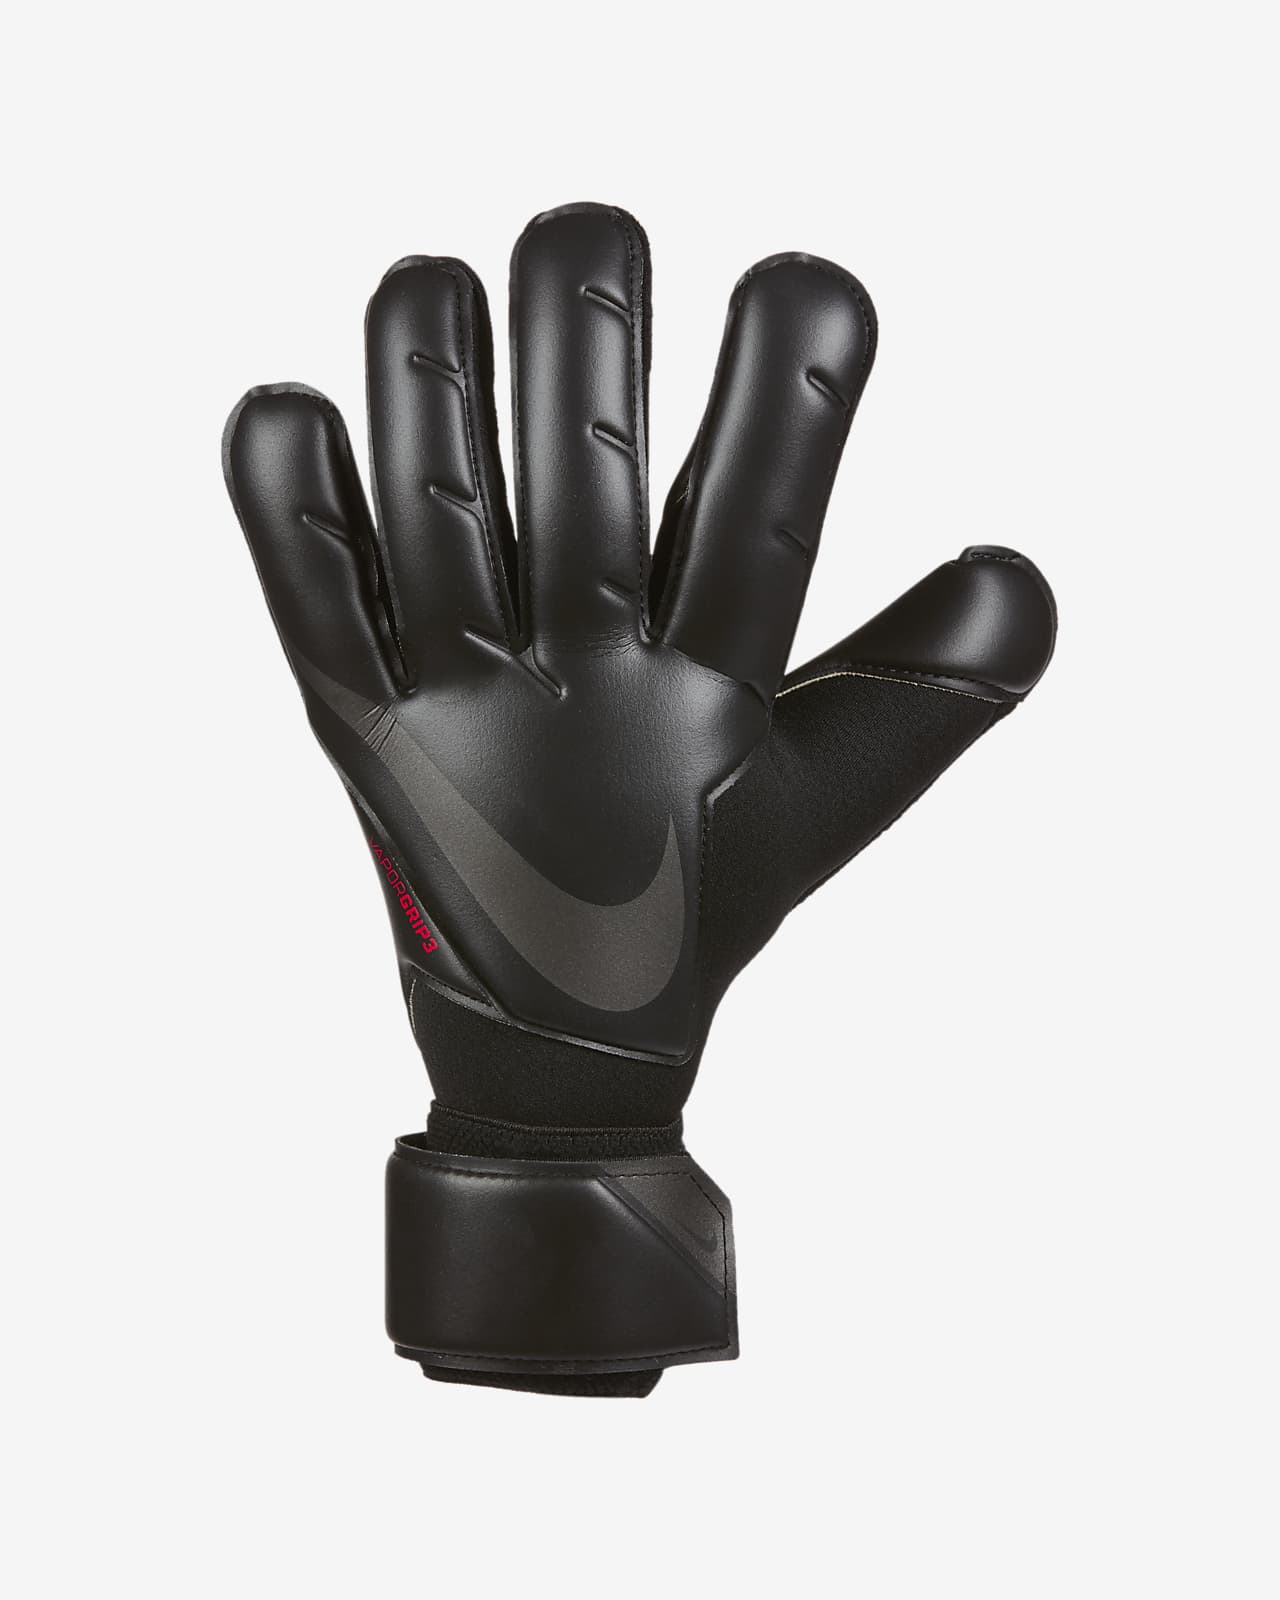 white nike goalkeeper gloves